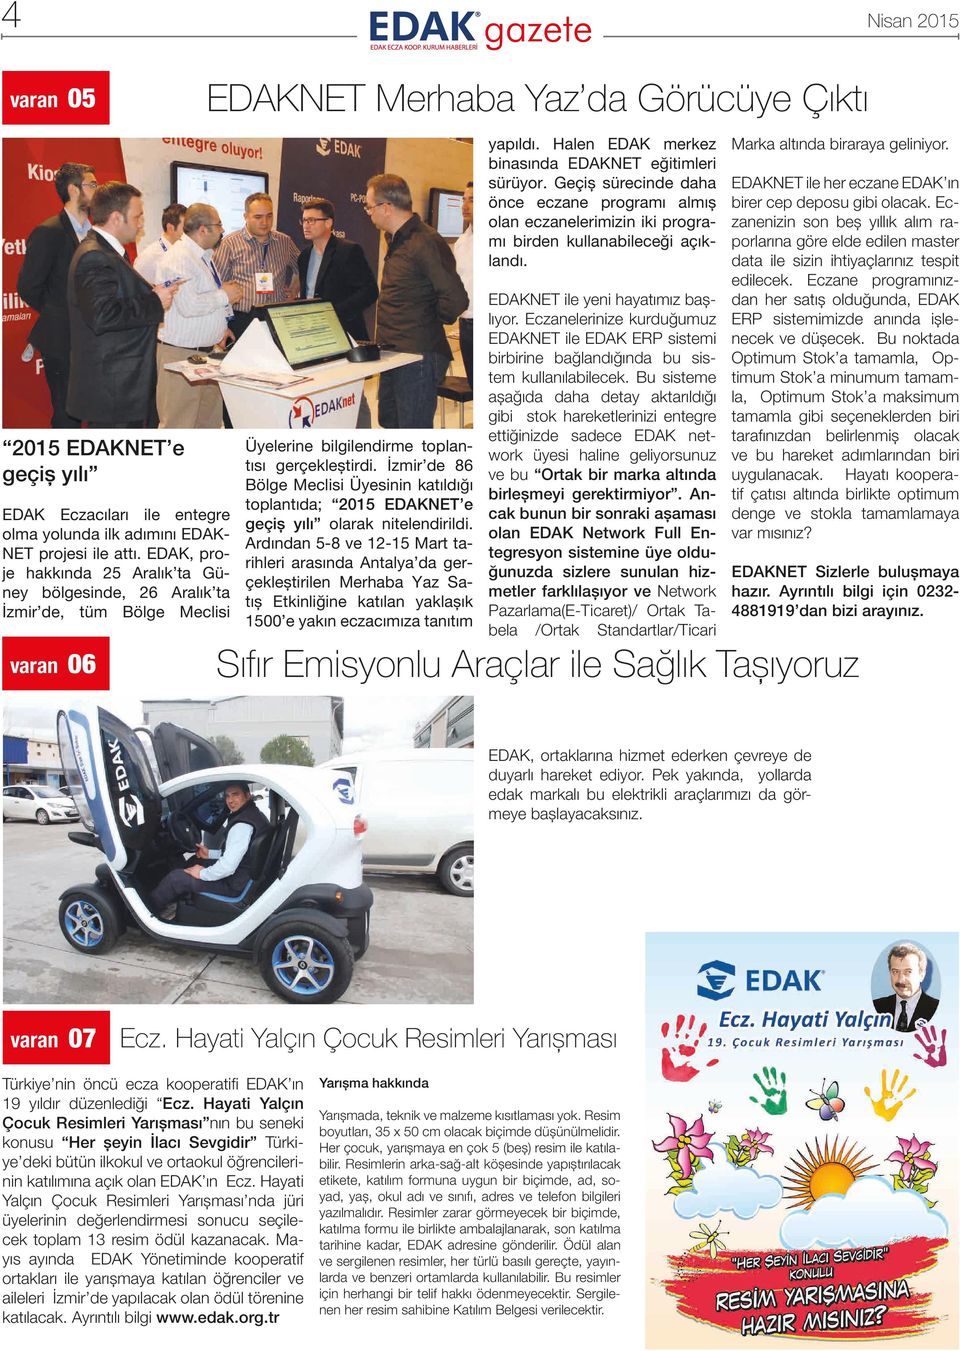 İzmir de 86 Bölge Meclisi Üyesinin katıldığı toplantıda; 2015 EDAKNET e geçiş yılı olarak nitelendirildi.